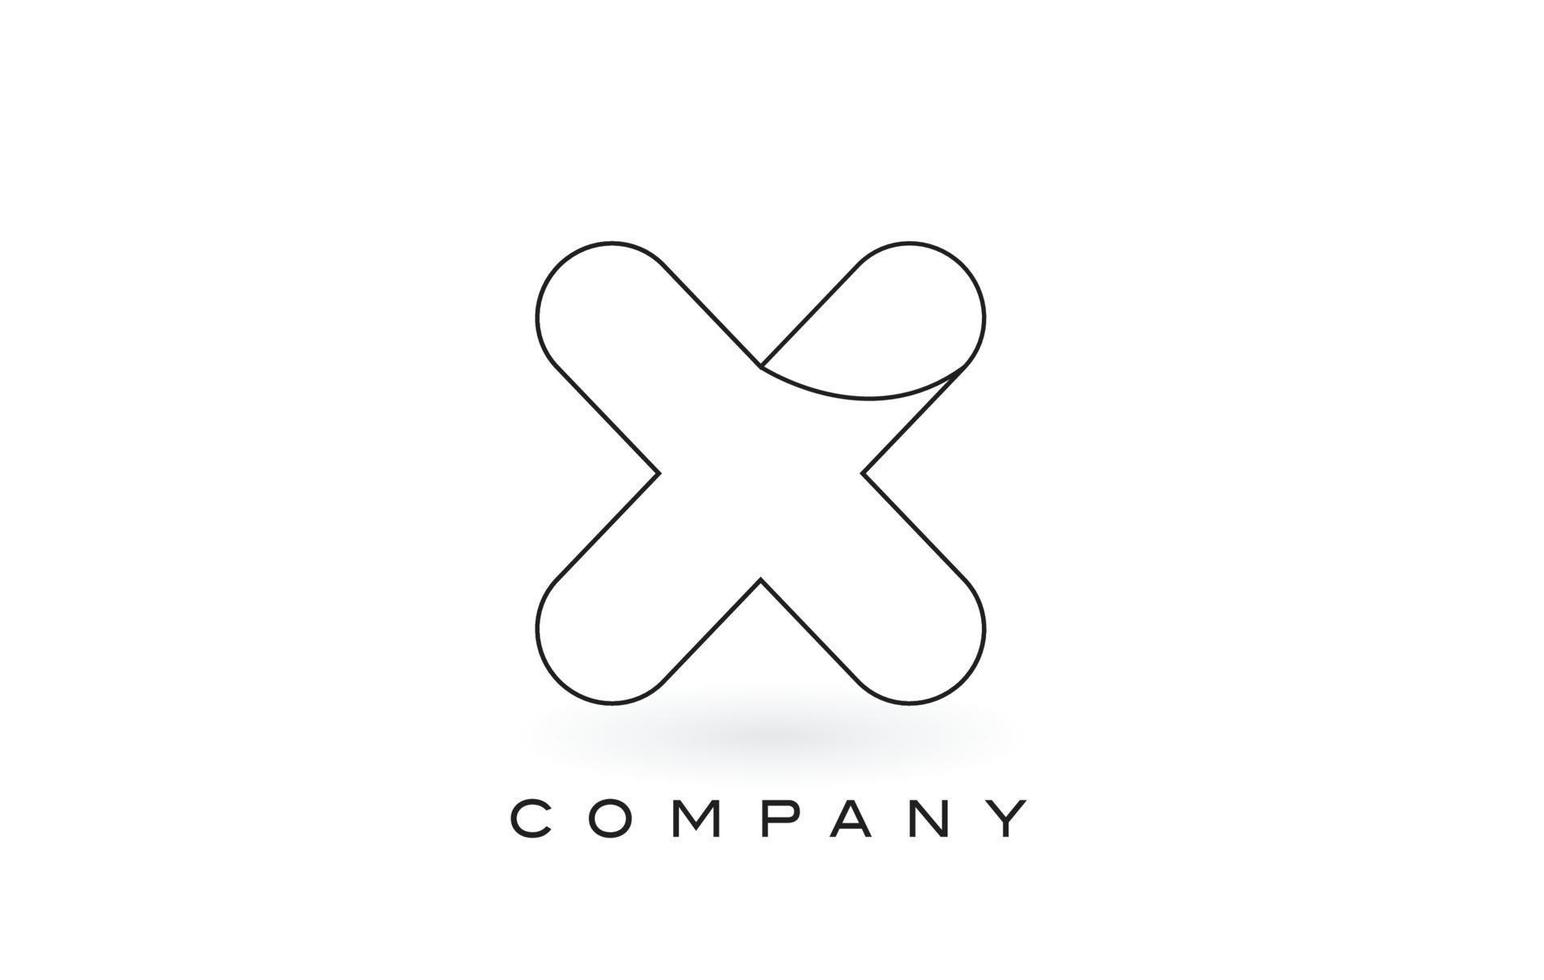 x logotipo da letra do monograma com contorno preto fino do contorno do monograma. vetor de design de carta na moda moderna.